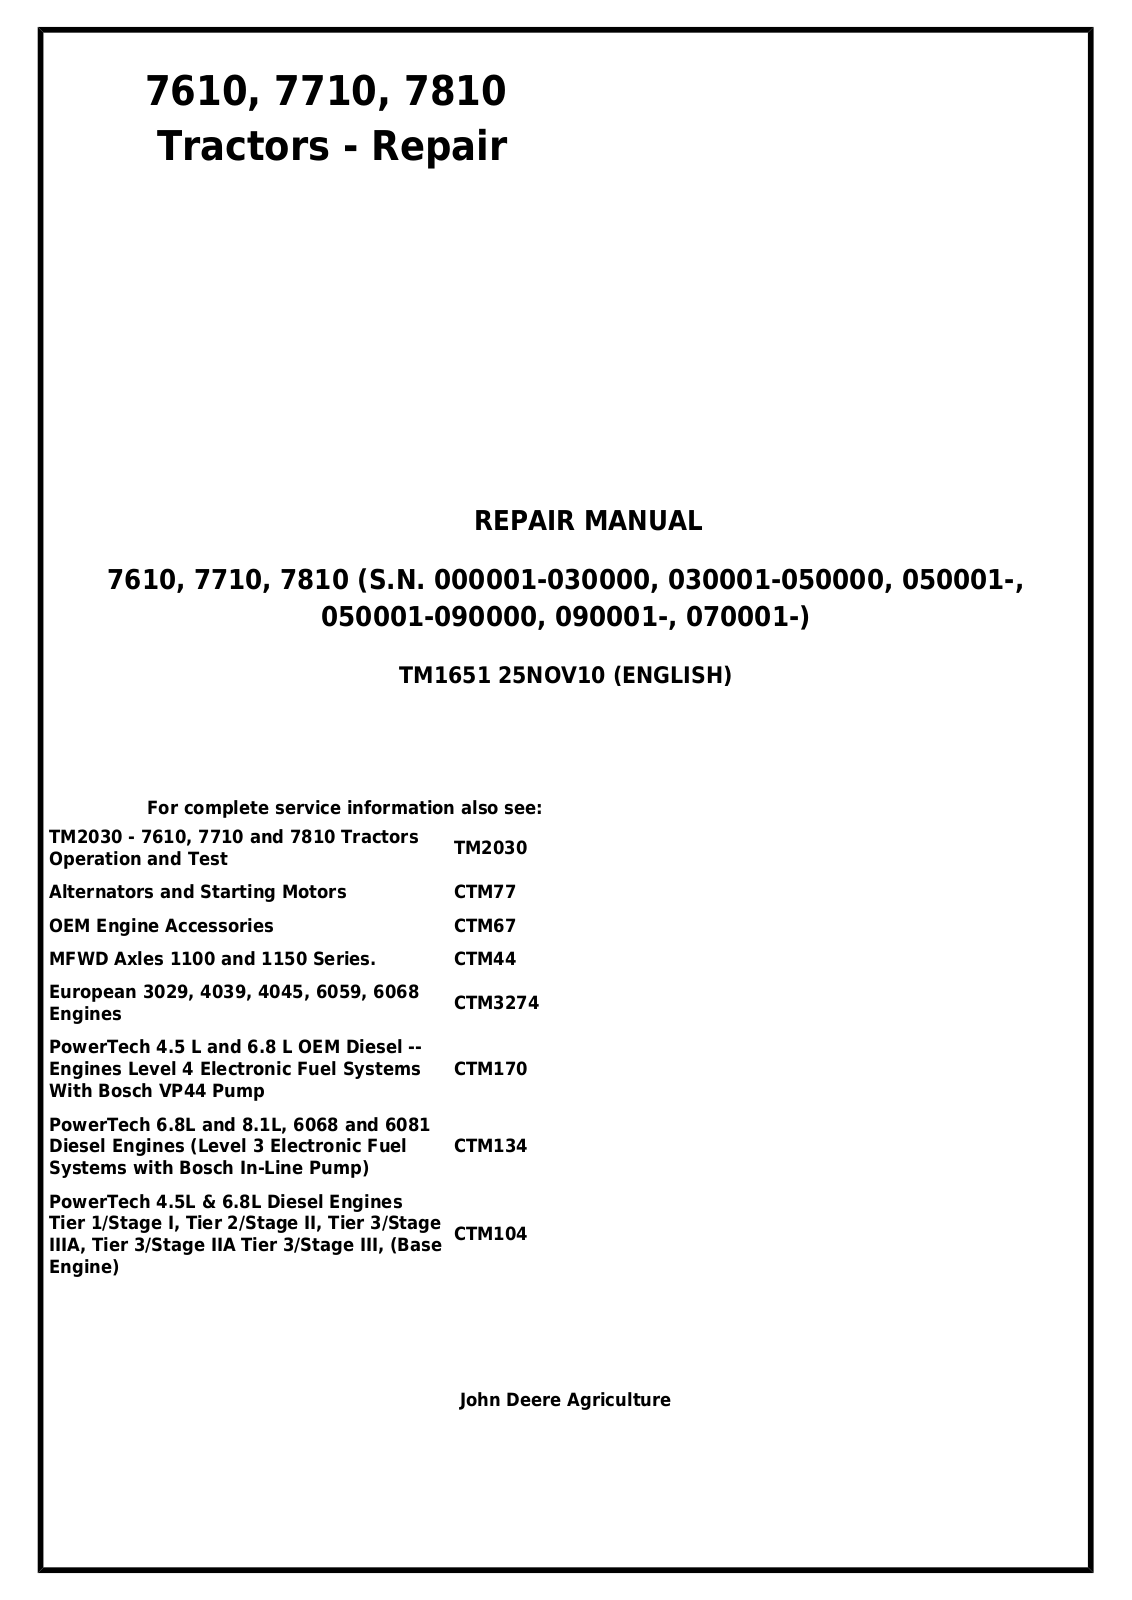 John Deere 7610, 7710, 7810 Repair Manual